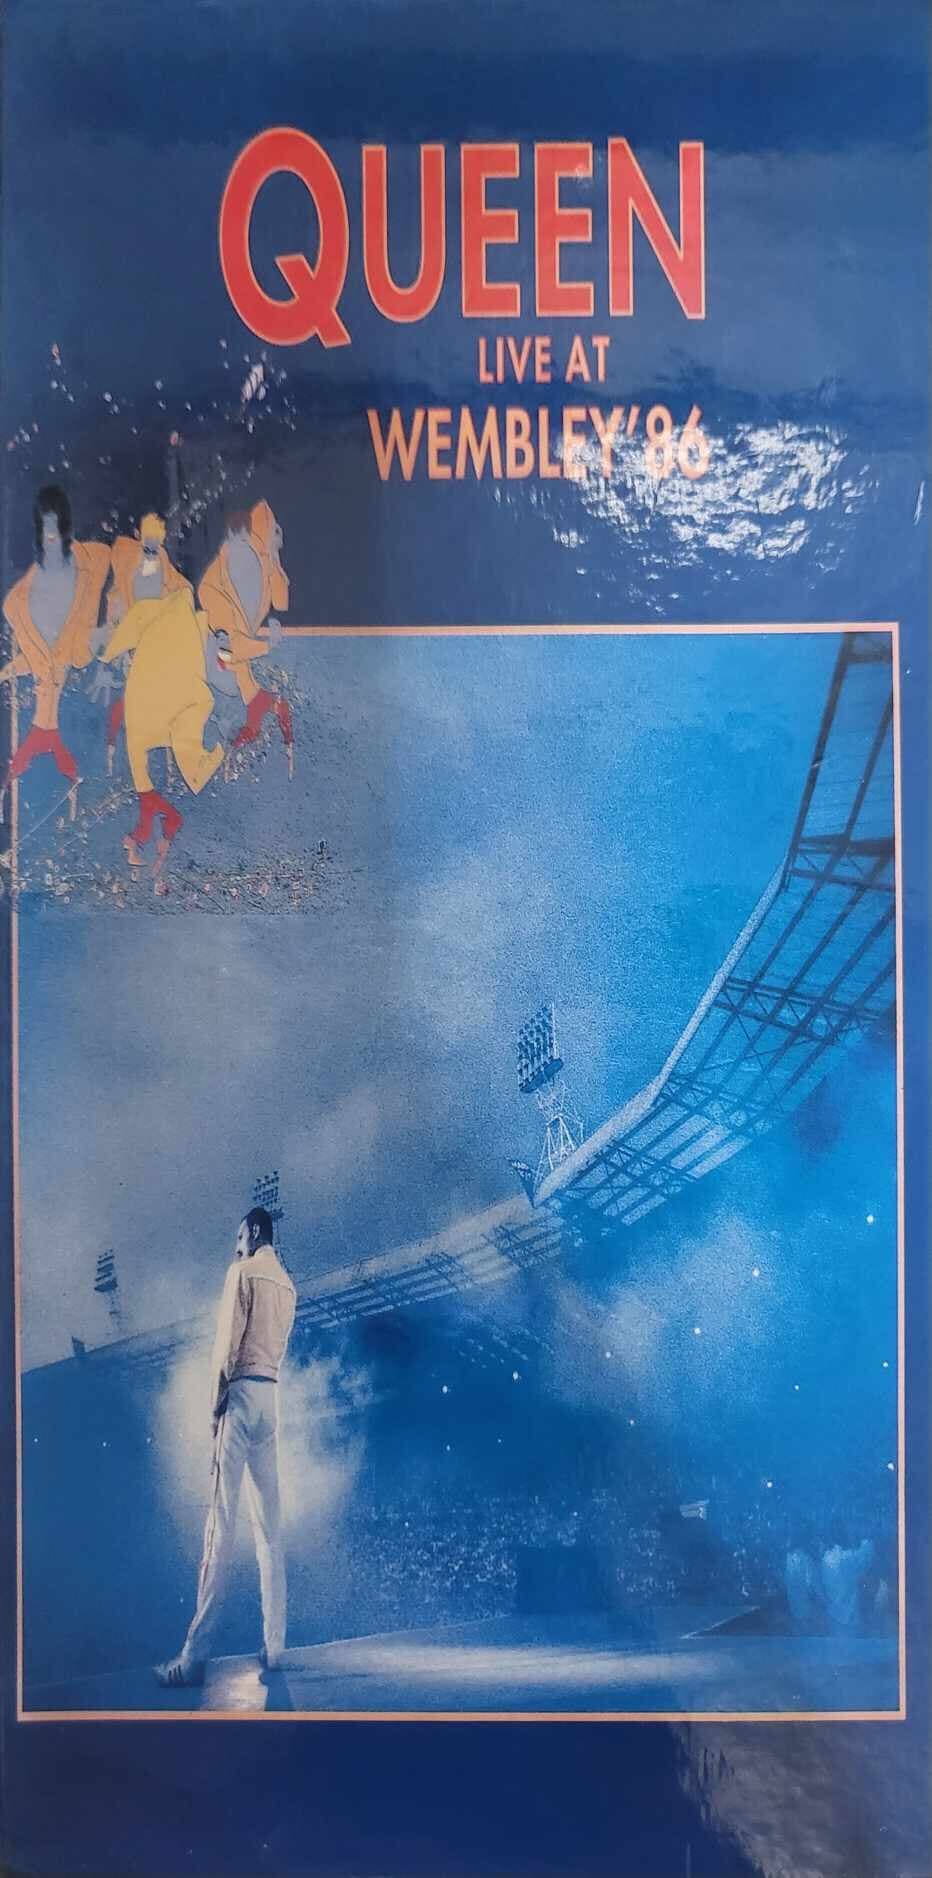 (카세트 테이프) Queen (퀸) - Live At Wembley '86